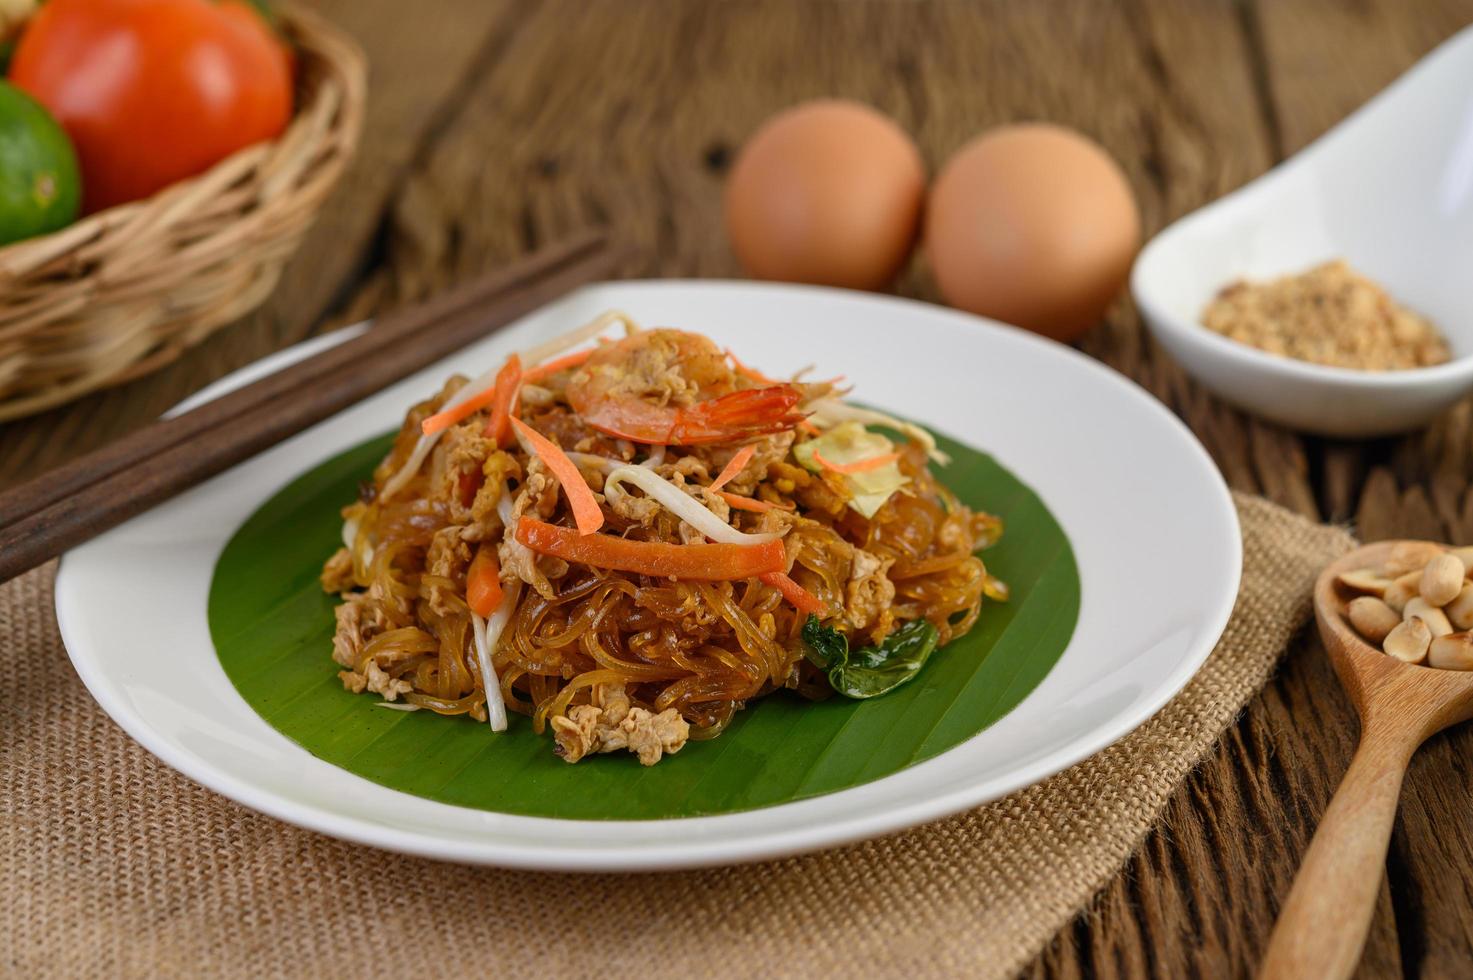 pad thai camarones en un bol con huevos, cebolleta y condimentos foto